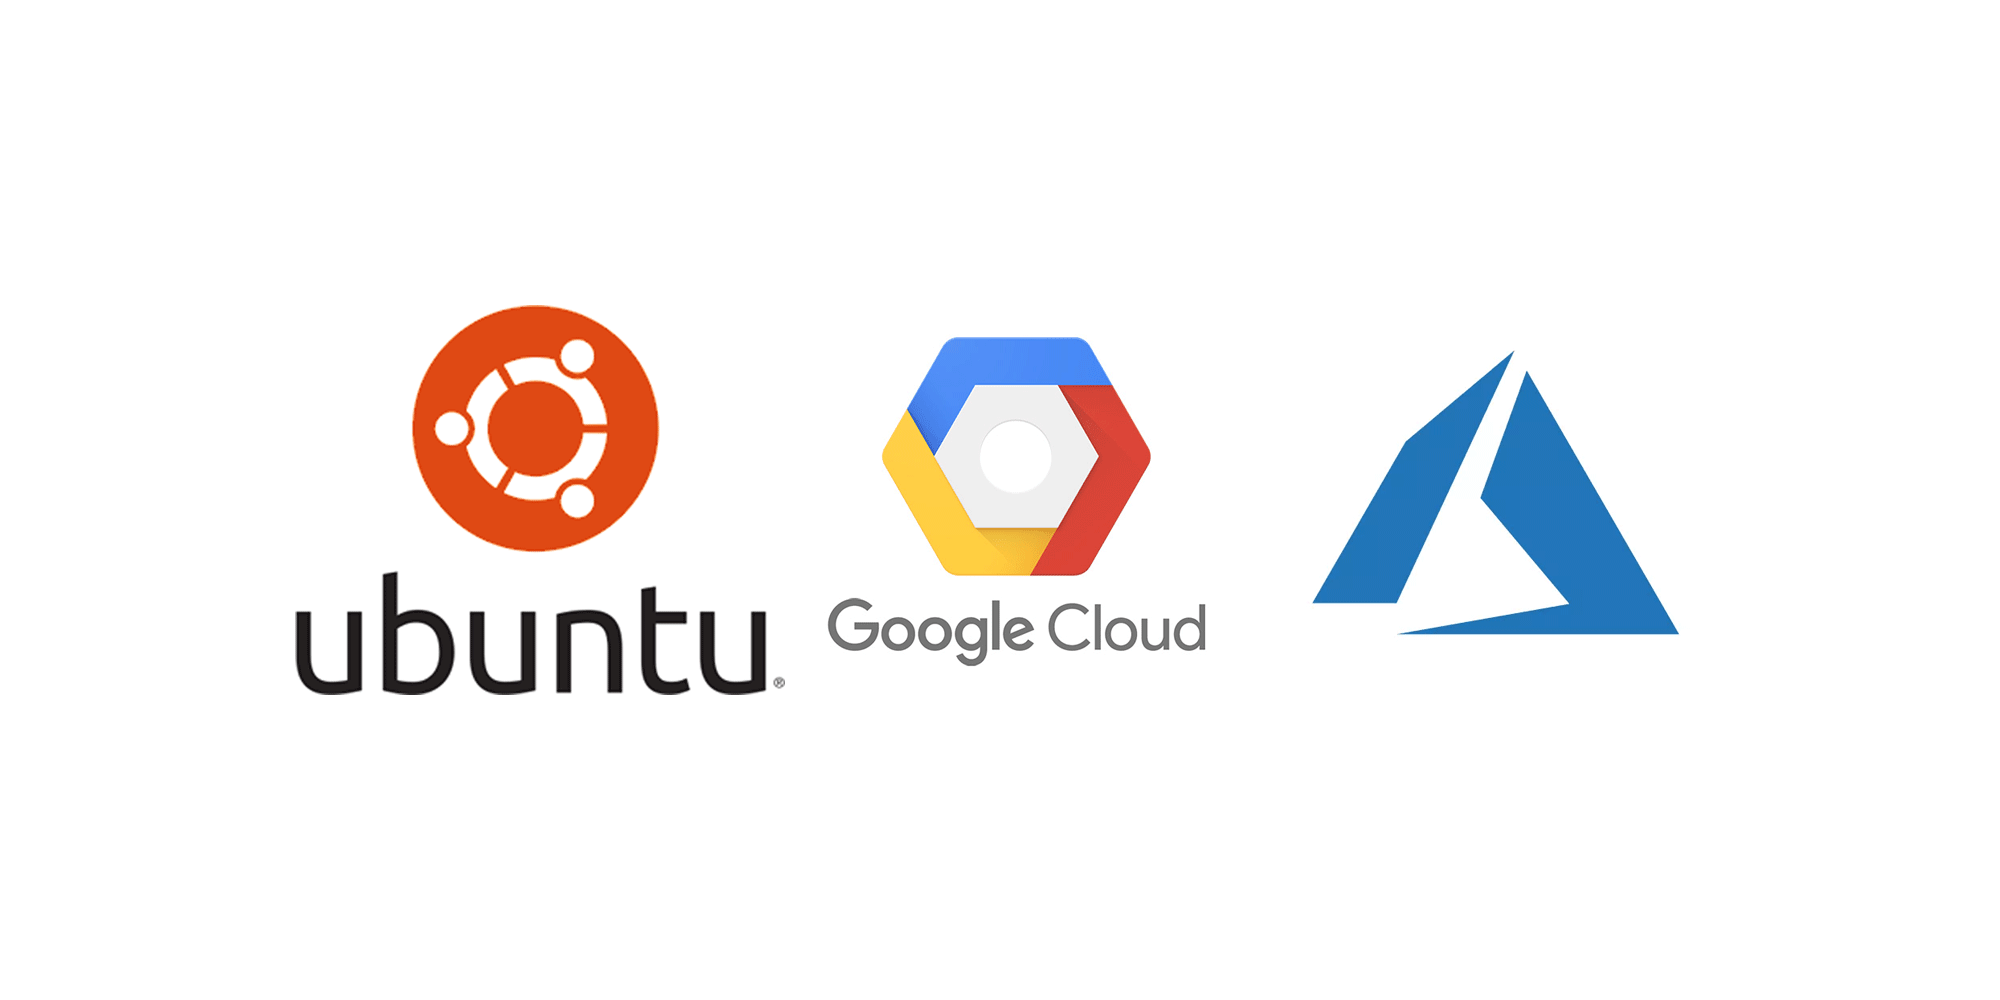 Ubuntu + Google Cloud + Azure logo